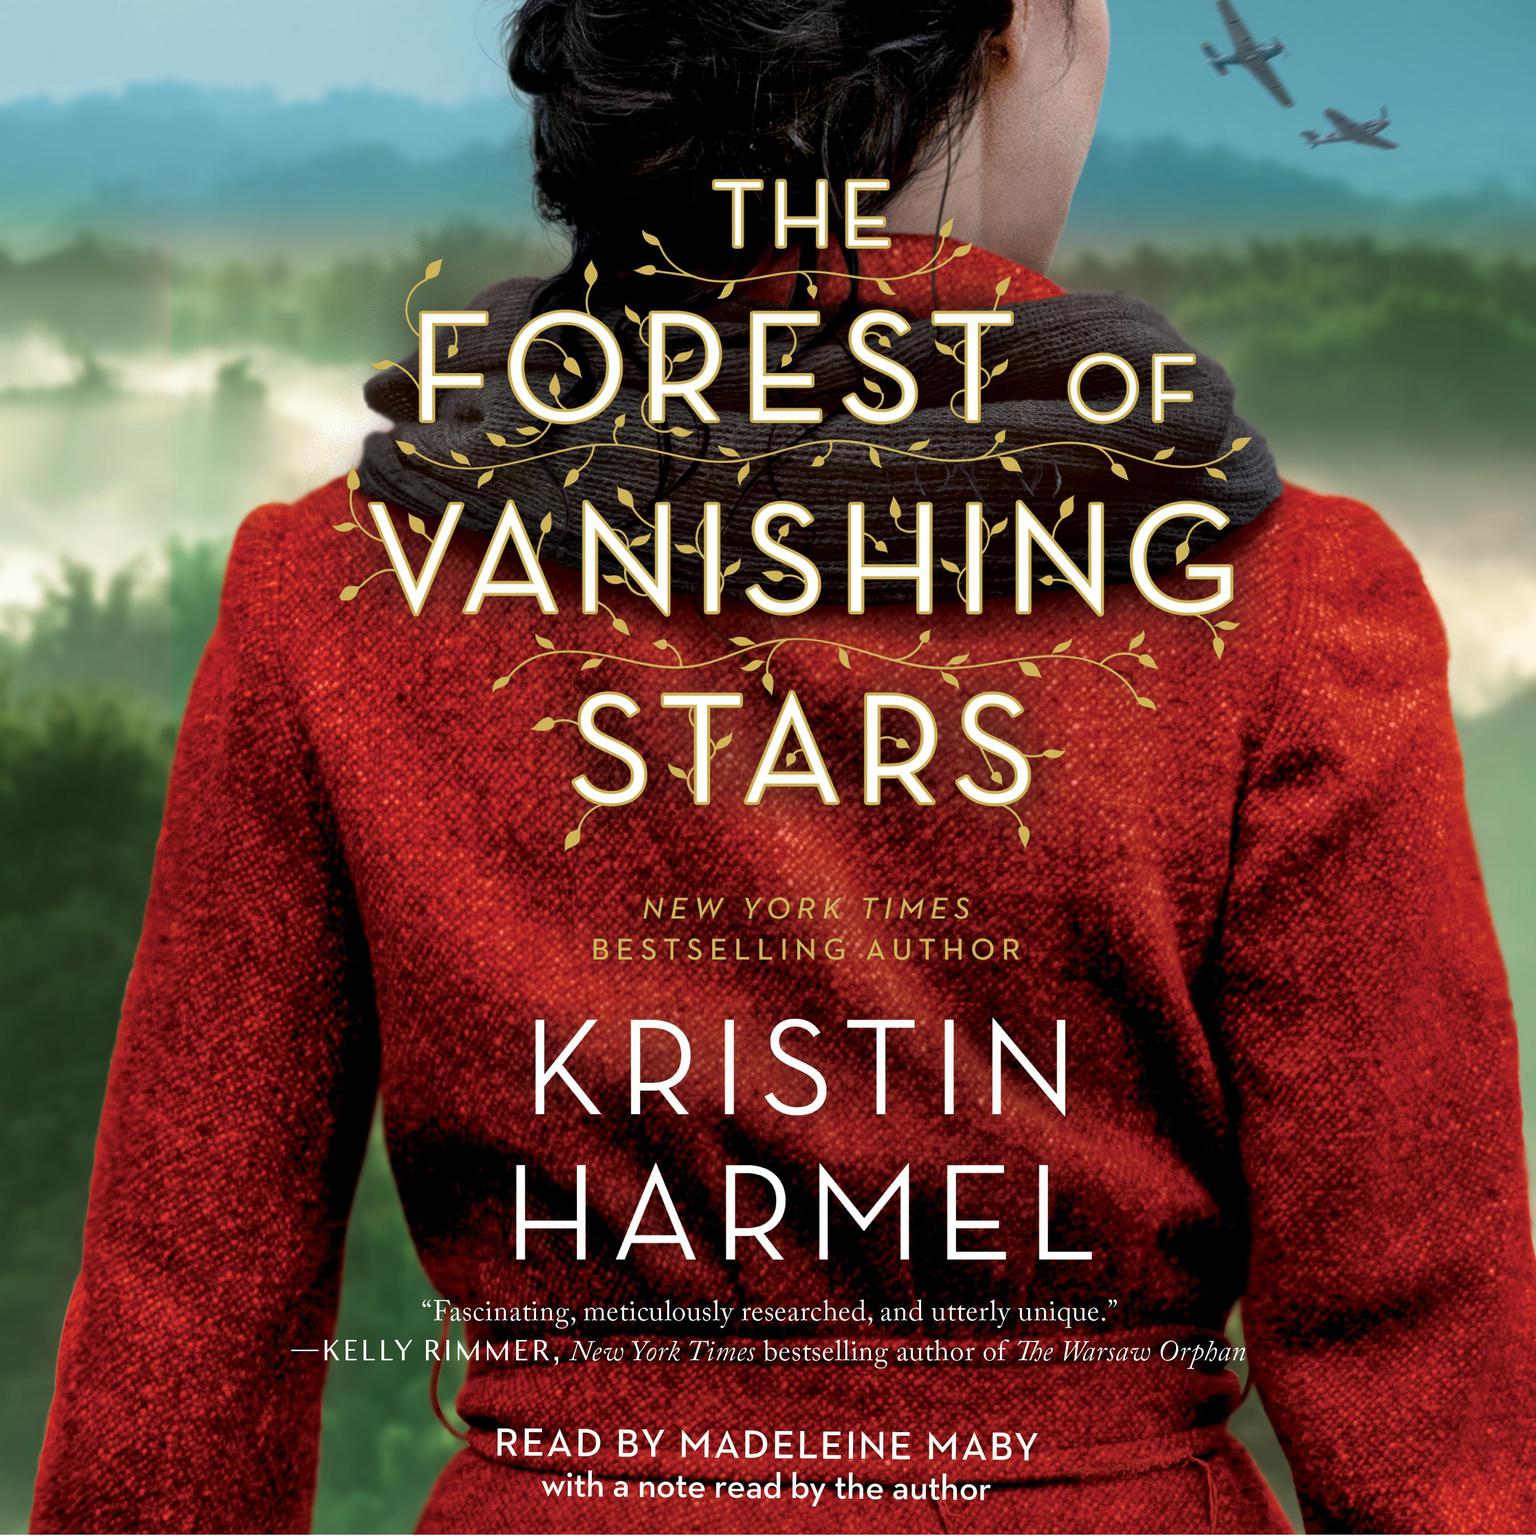 The Forest of Vanishing Stars: A Novel Audiobook, by Kristin Harmel